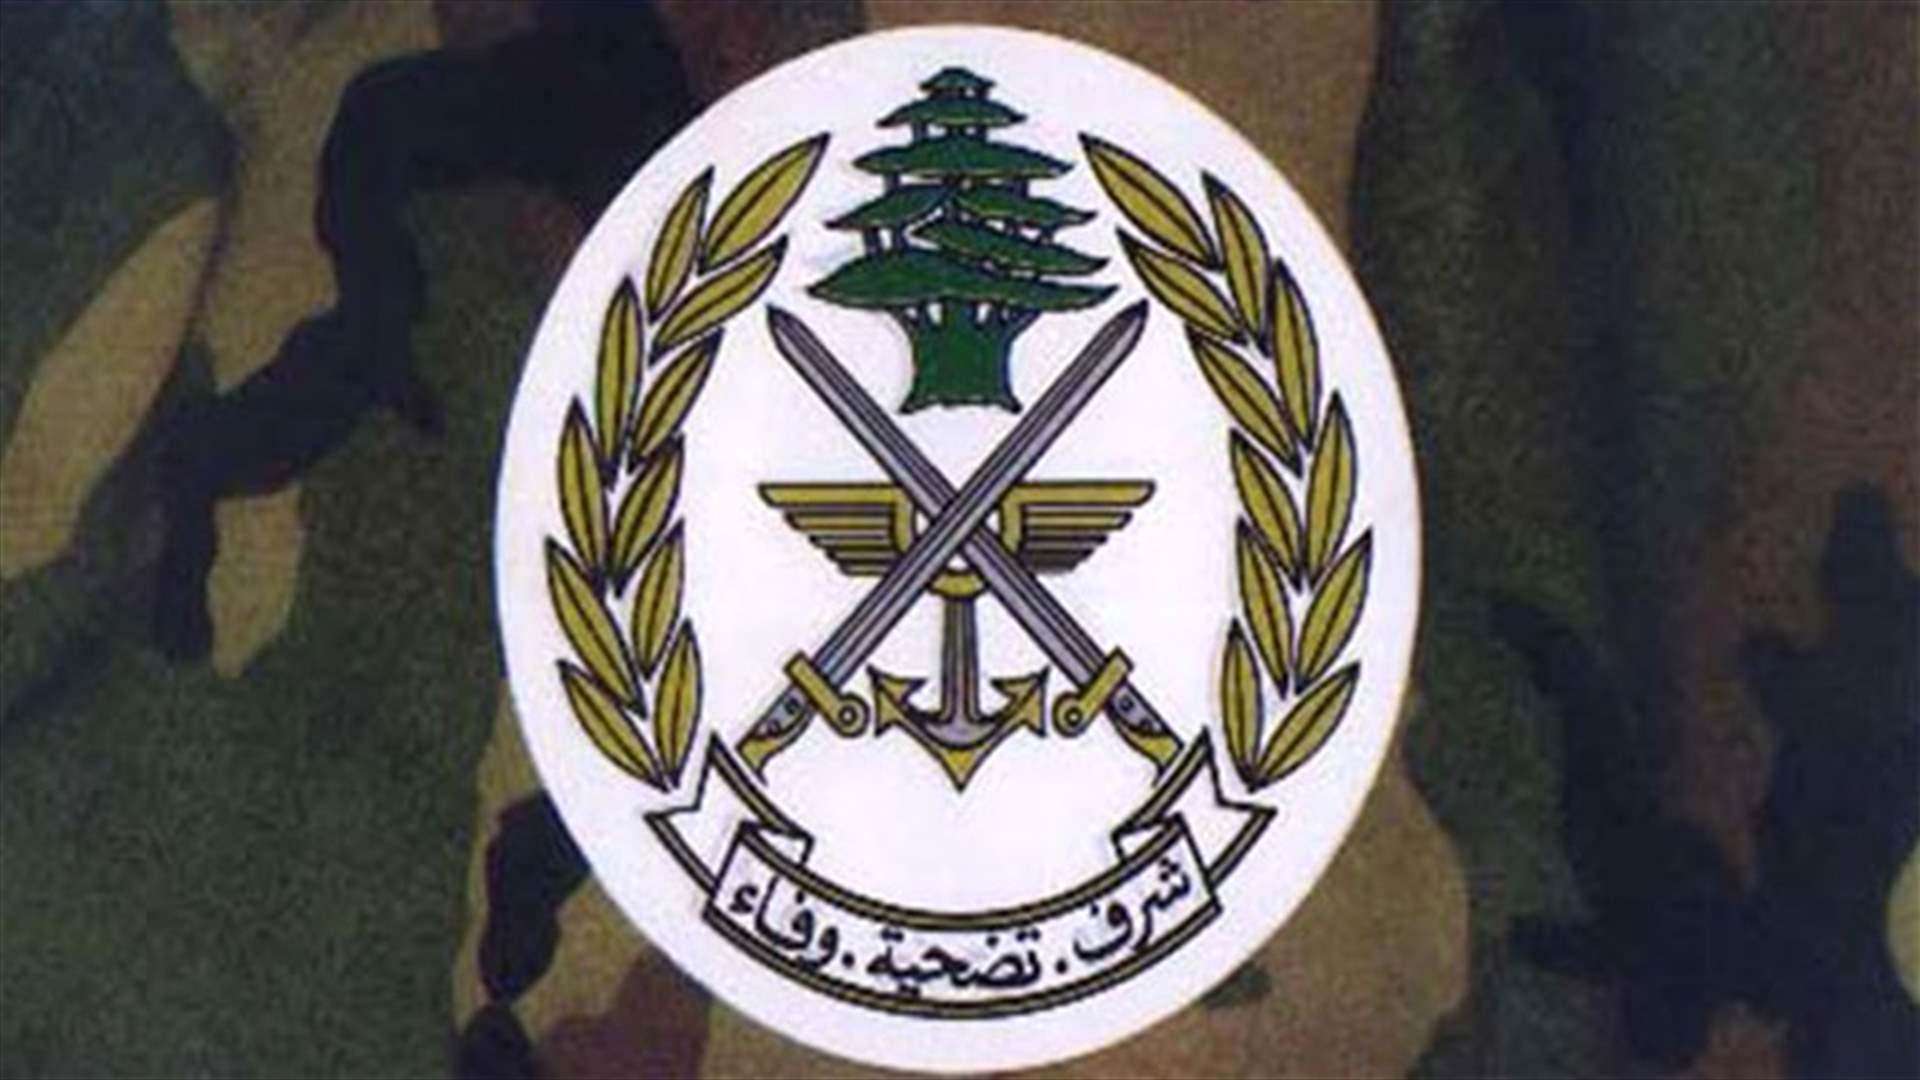 الجيش يوضح صحة الأخبار حول تعيينات ضباط وتغييرات في وظائفهم